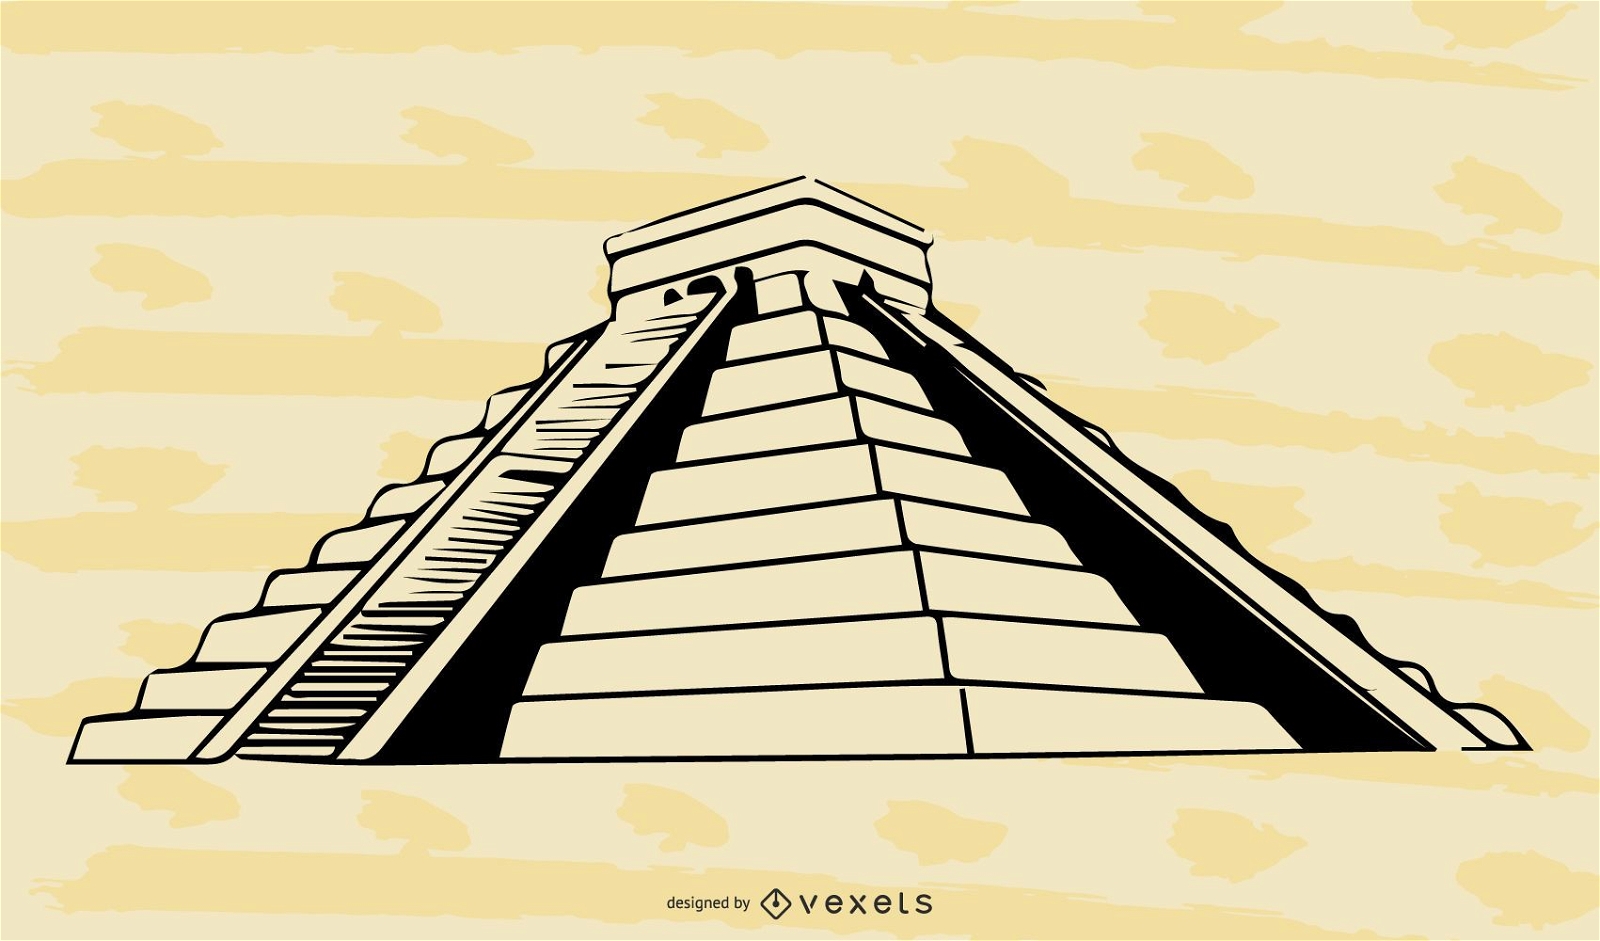 Desenho vetorial plano da pirâmide maia